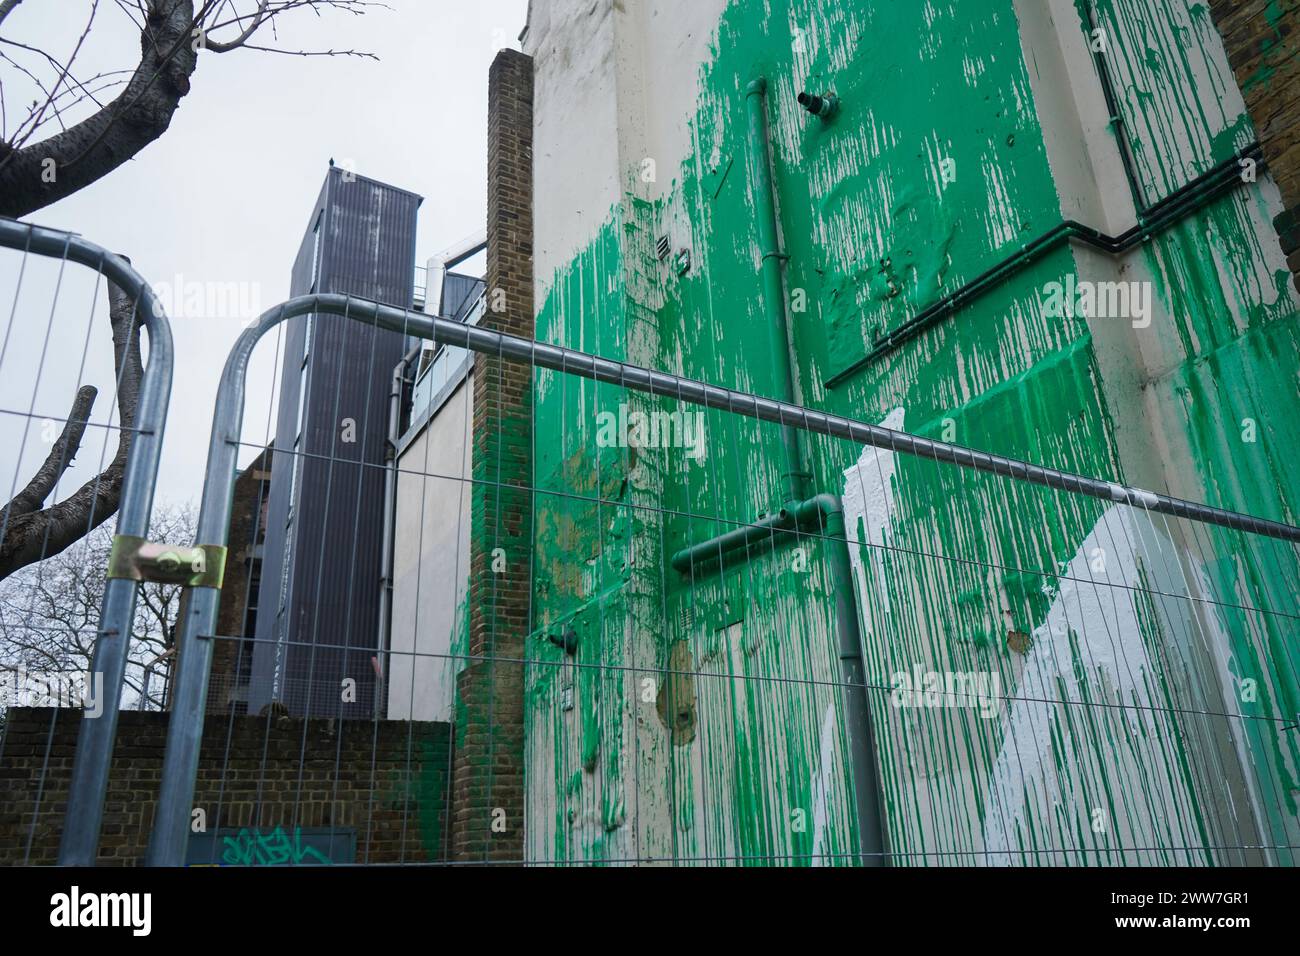 März 2024 . Das neue Banksy-Baumgemälde ist eingezäunt, nachdem es mit weißer Farbe zerstört wurde. Das Wandgemälde ist zu einer Touristenattraktion geworden, bei der Menschen anhalten, um Fotos zu machen. Quelle: amer Gazzal/Alamy Live News Stockfoto